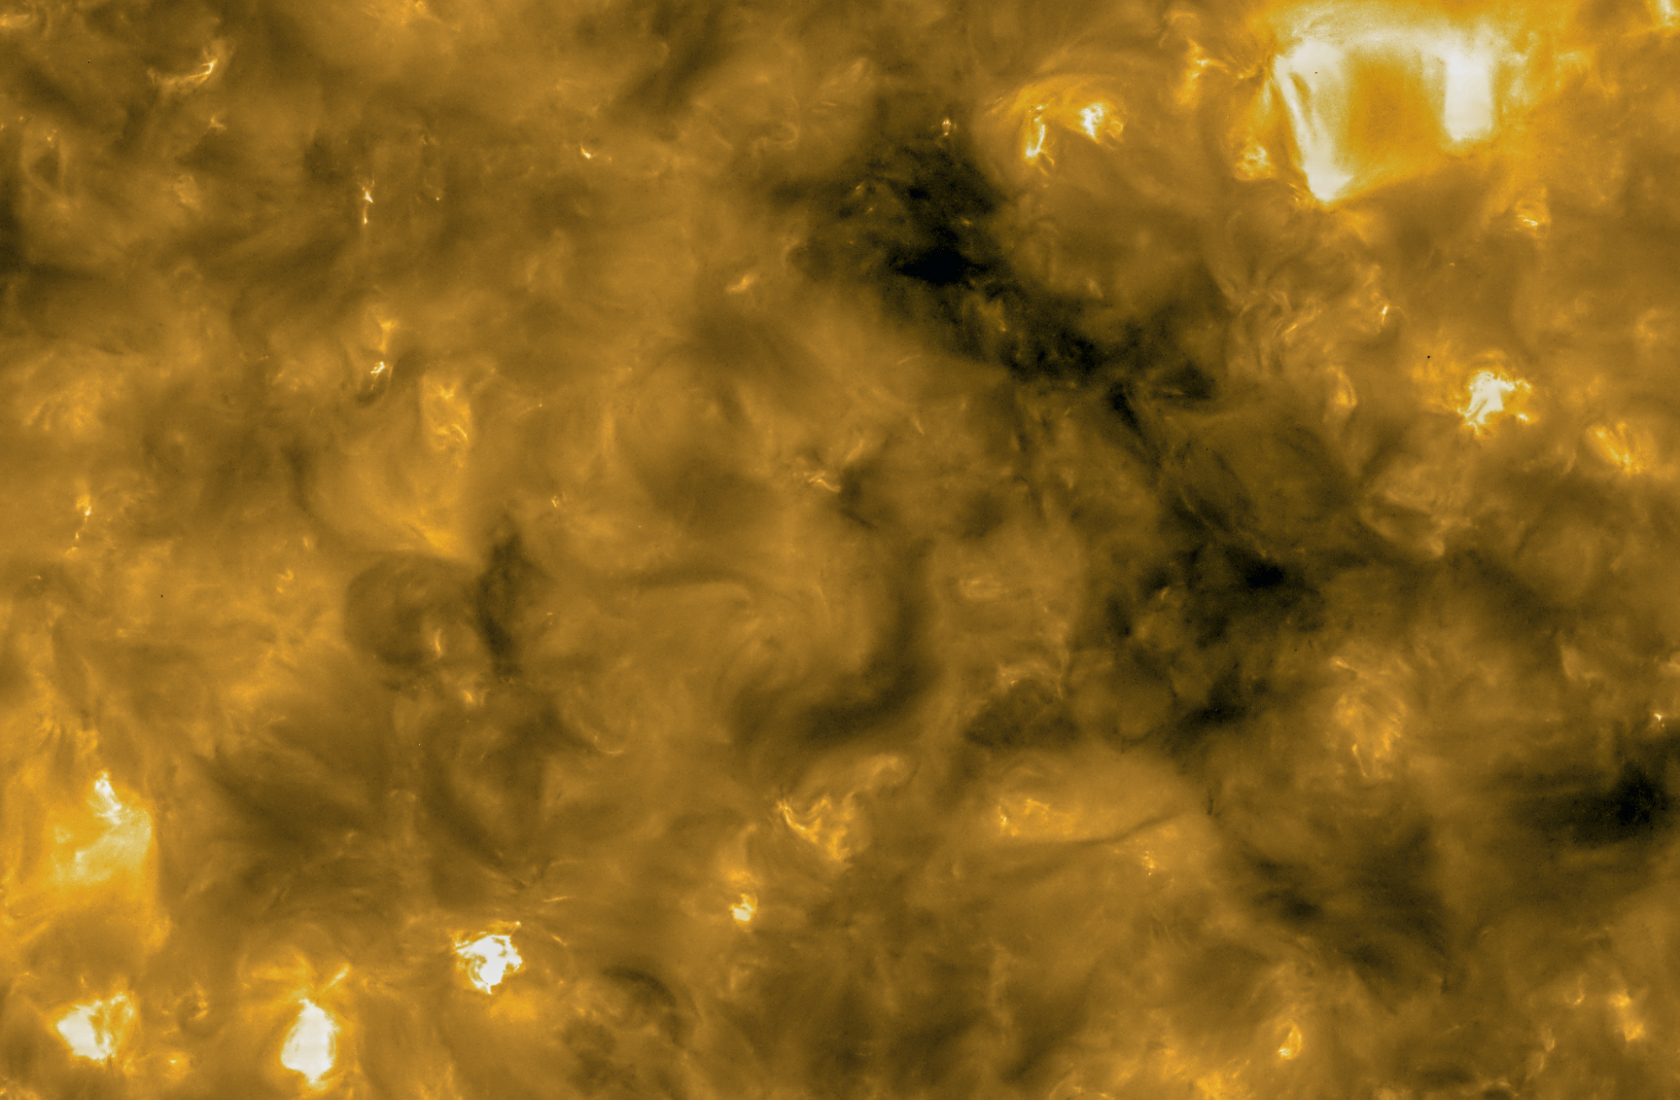 Снимки солнца НАСА